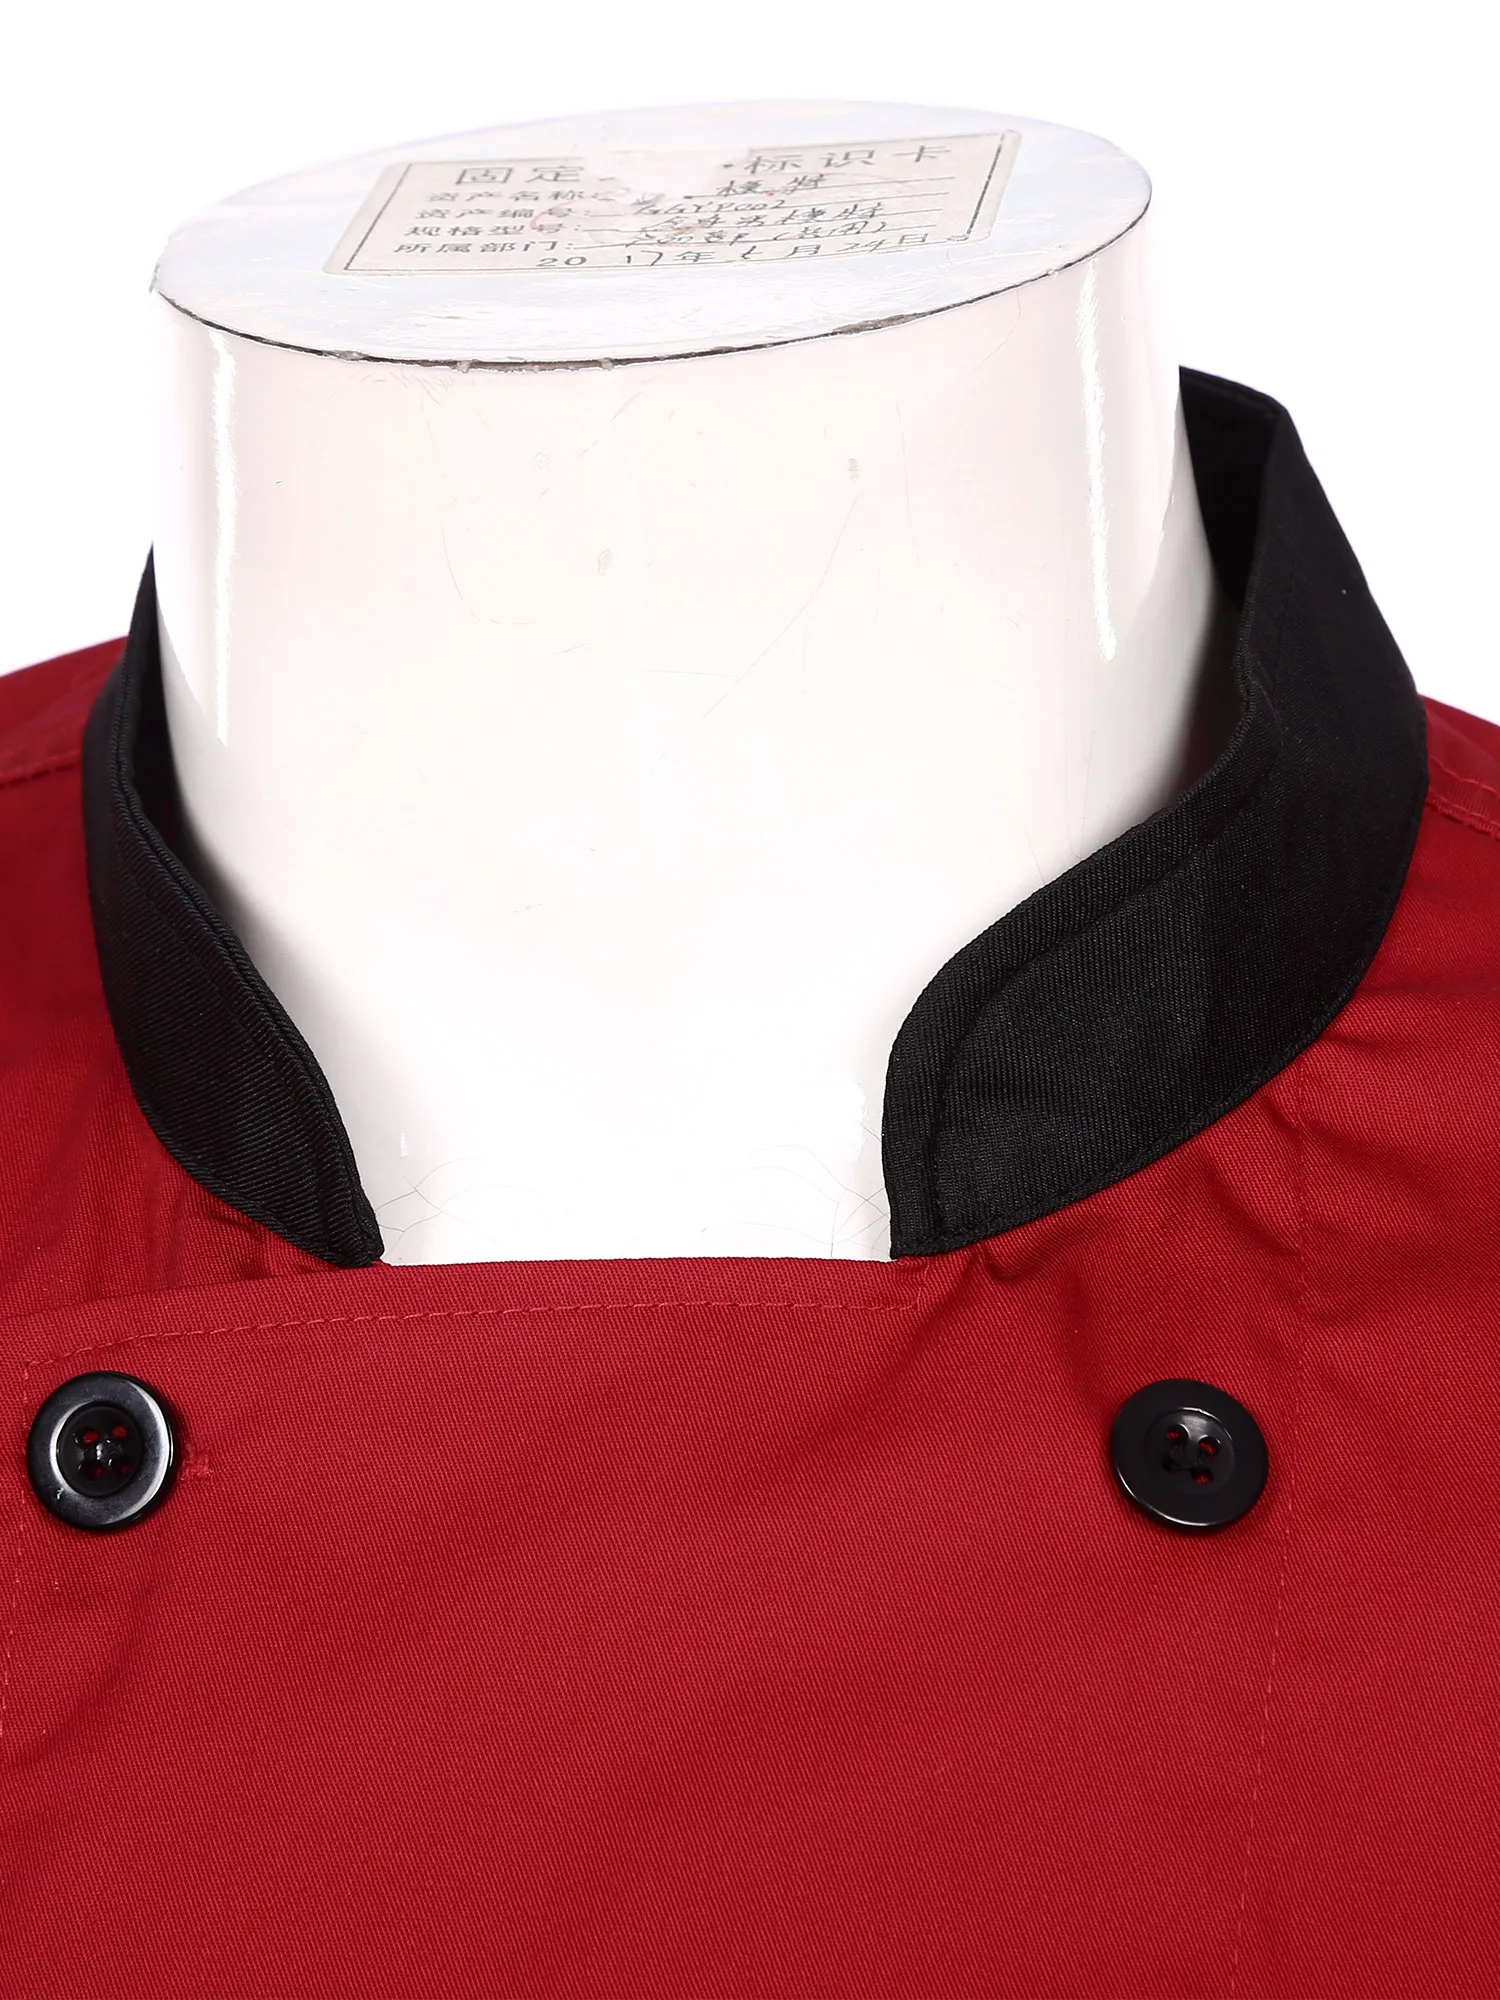 Chaqueta de Chef de manga corta para hombre, camisa de Chef transpirable con cuello levantado, uniforme de cocina de Hotel y restaurante con bolsillos